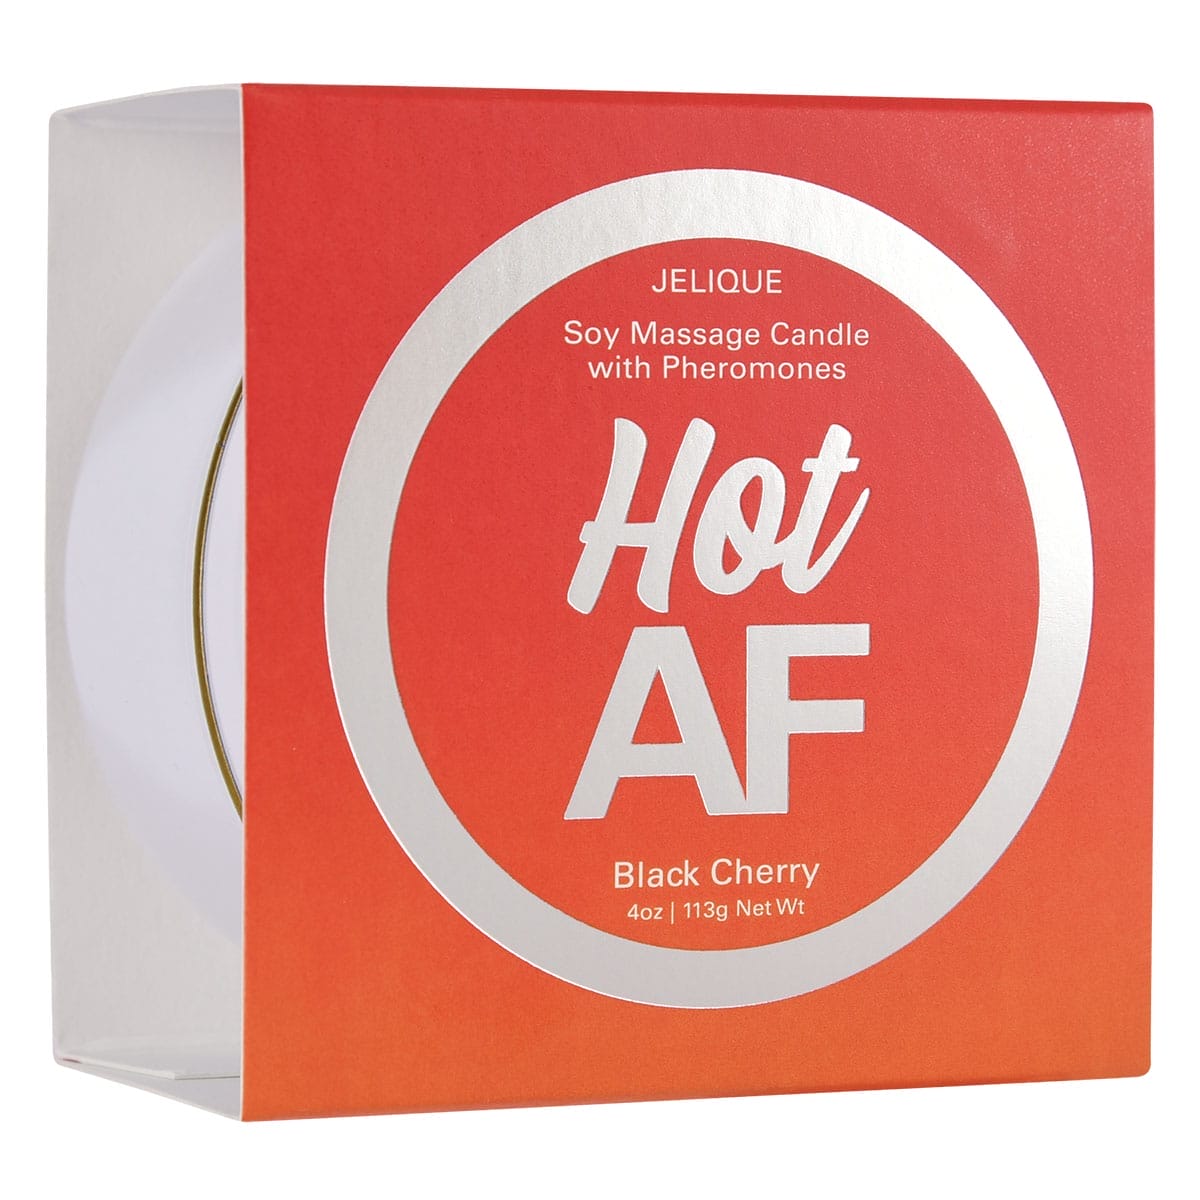 Buy Jelique Pheromone Massage Candle Hot AF Black Cherry 4oz for her or him.